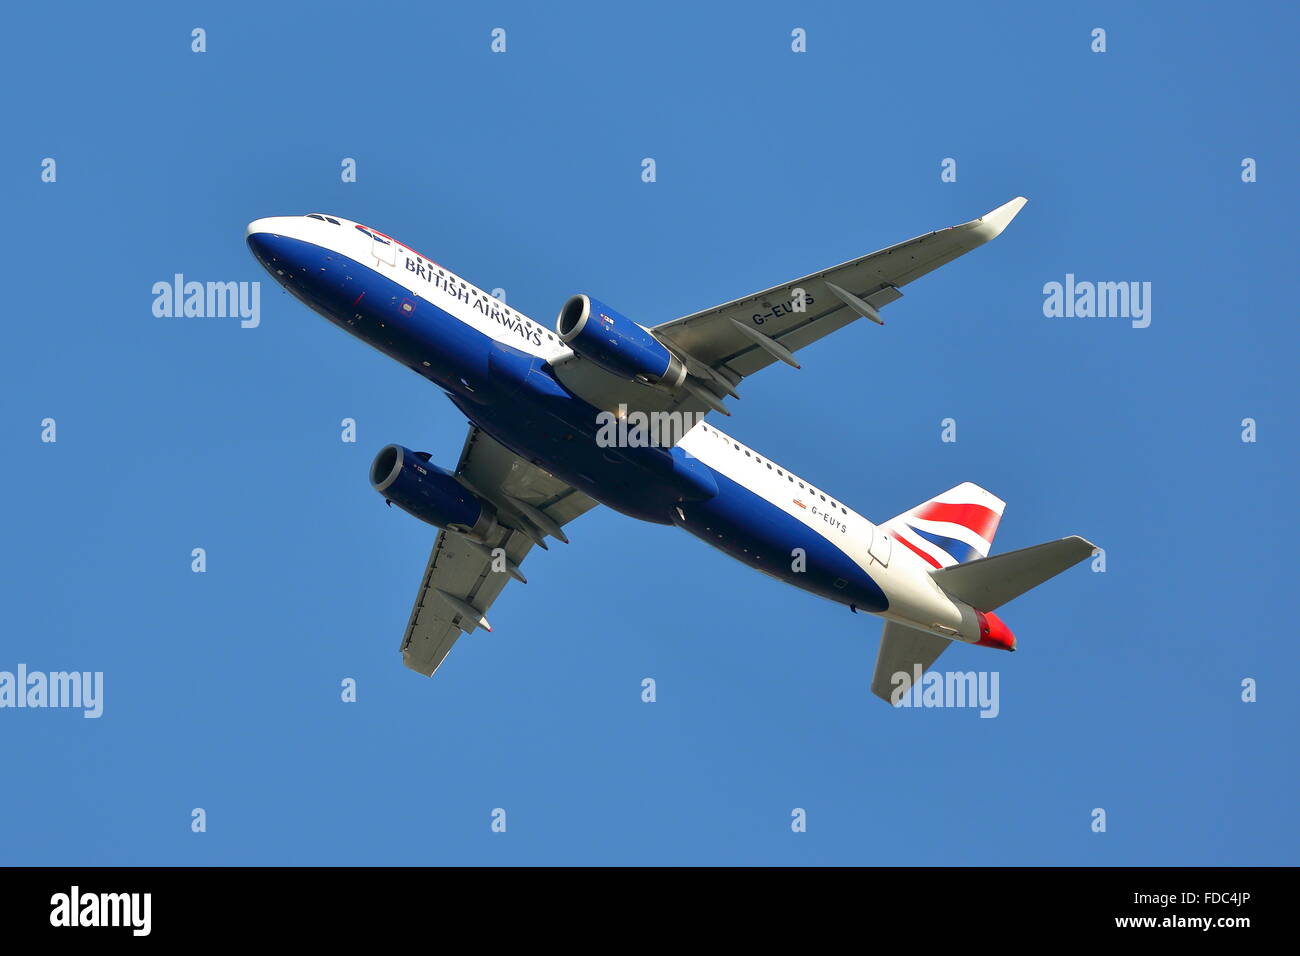 British Airways Airbus 320-200(WL) G-EUYS departing from London Heathrow Airport, UK Stock Photo